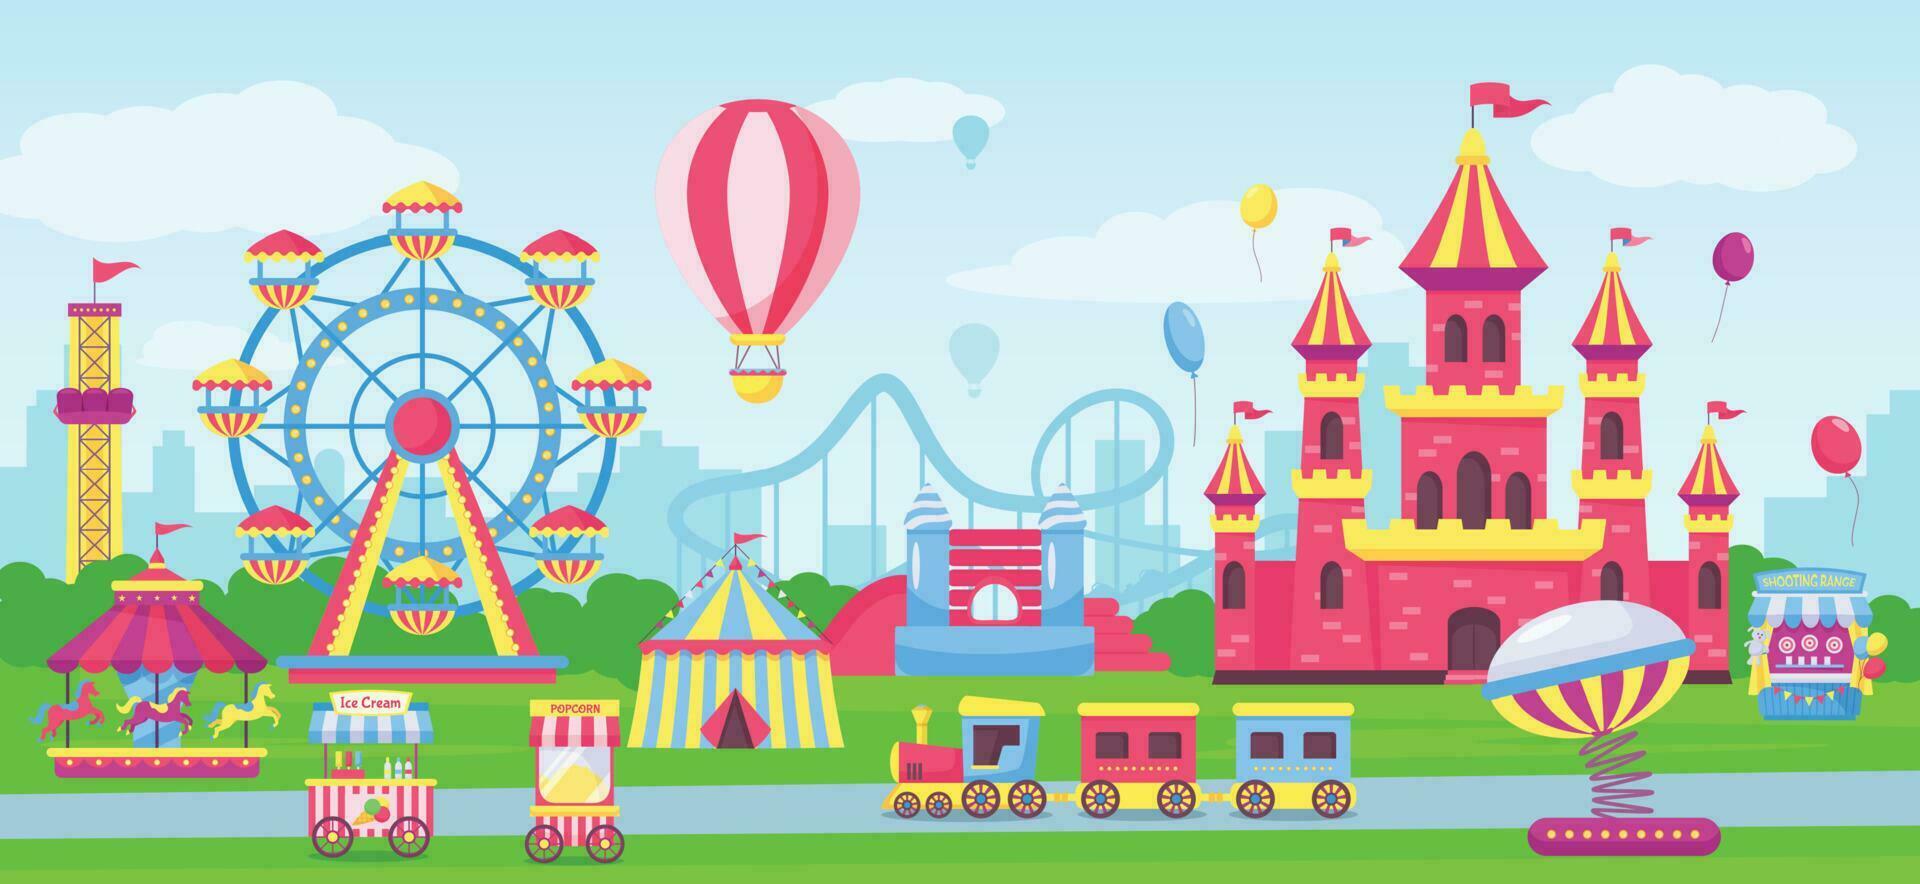 diversão parque com parque de diversões atrações, carnaval feira passeios. desenho animado circo barraca, crianças castelo, montanha russa vetor ilustração